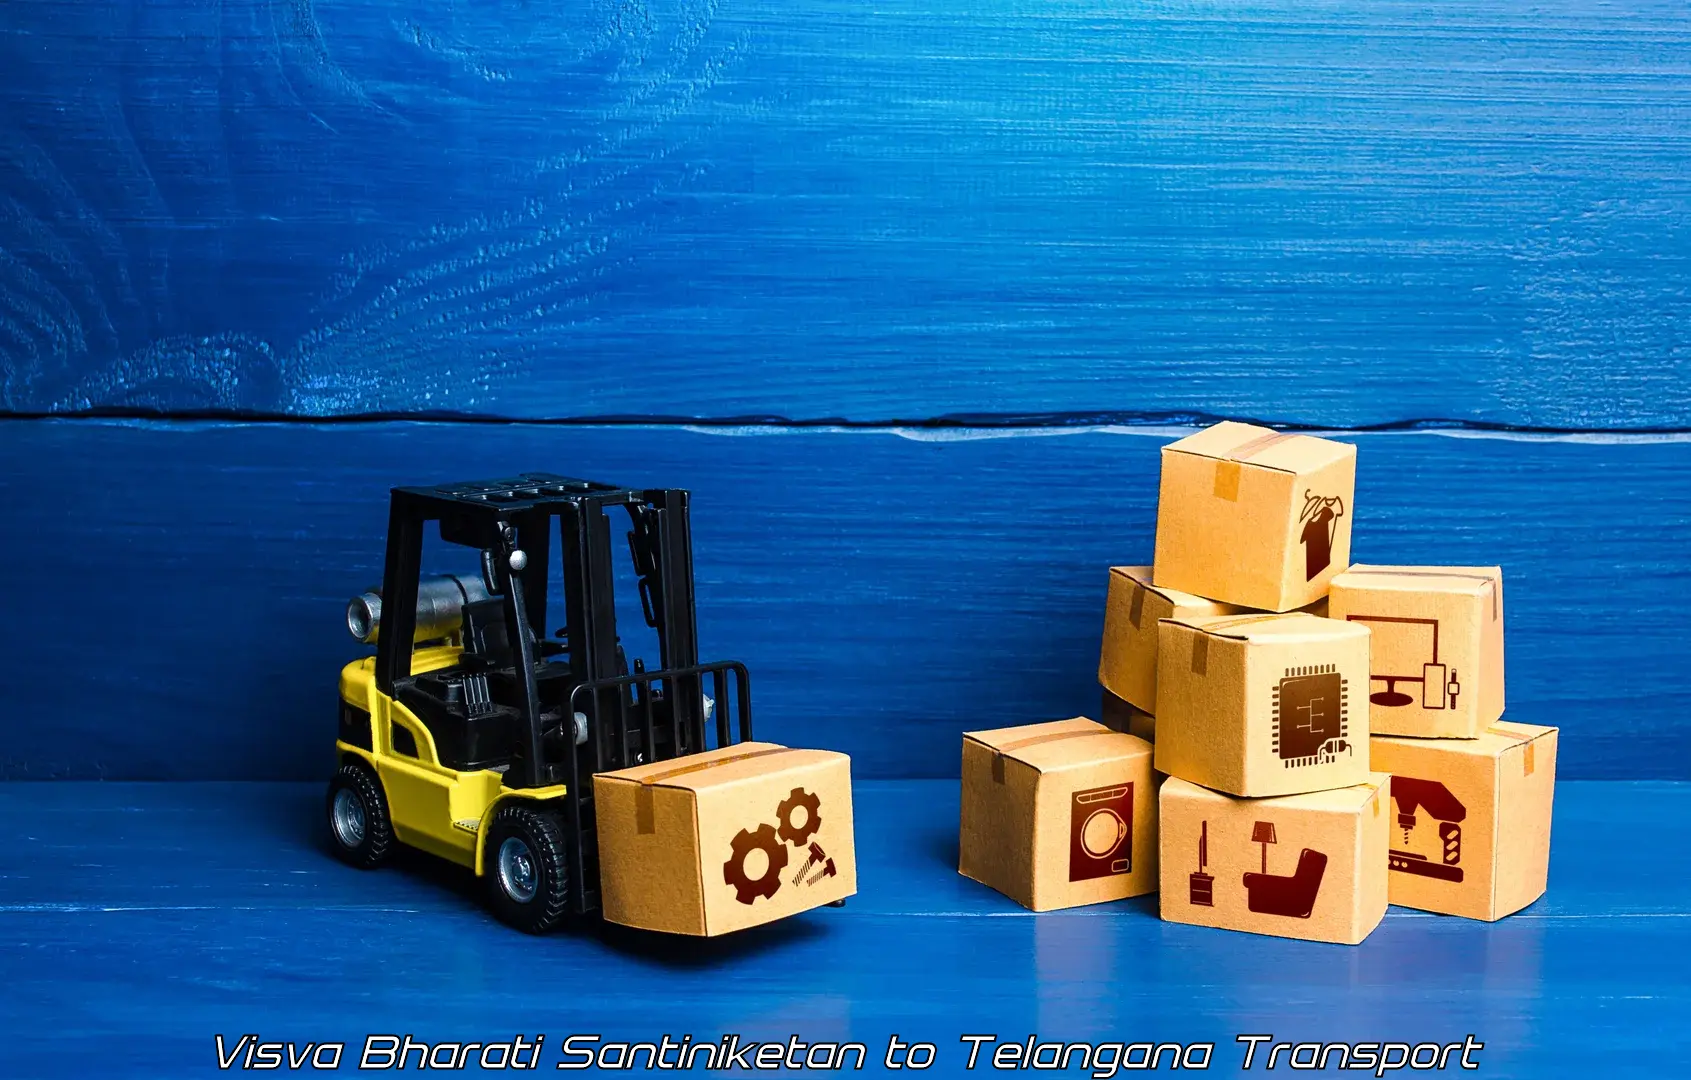 Container transport service Visva Bharati Santiniketan to Dahegaon